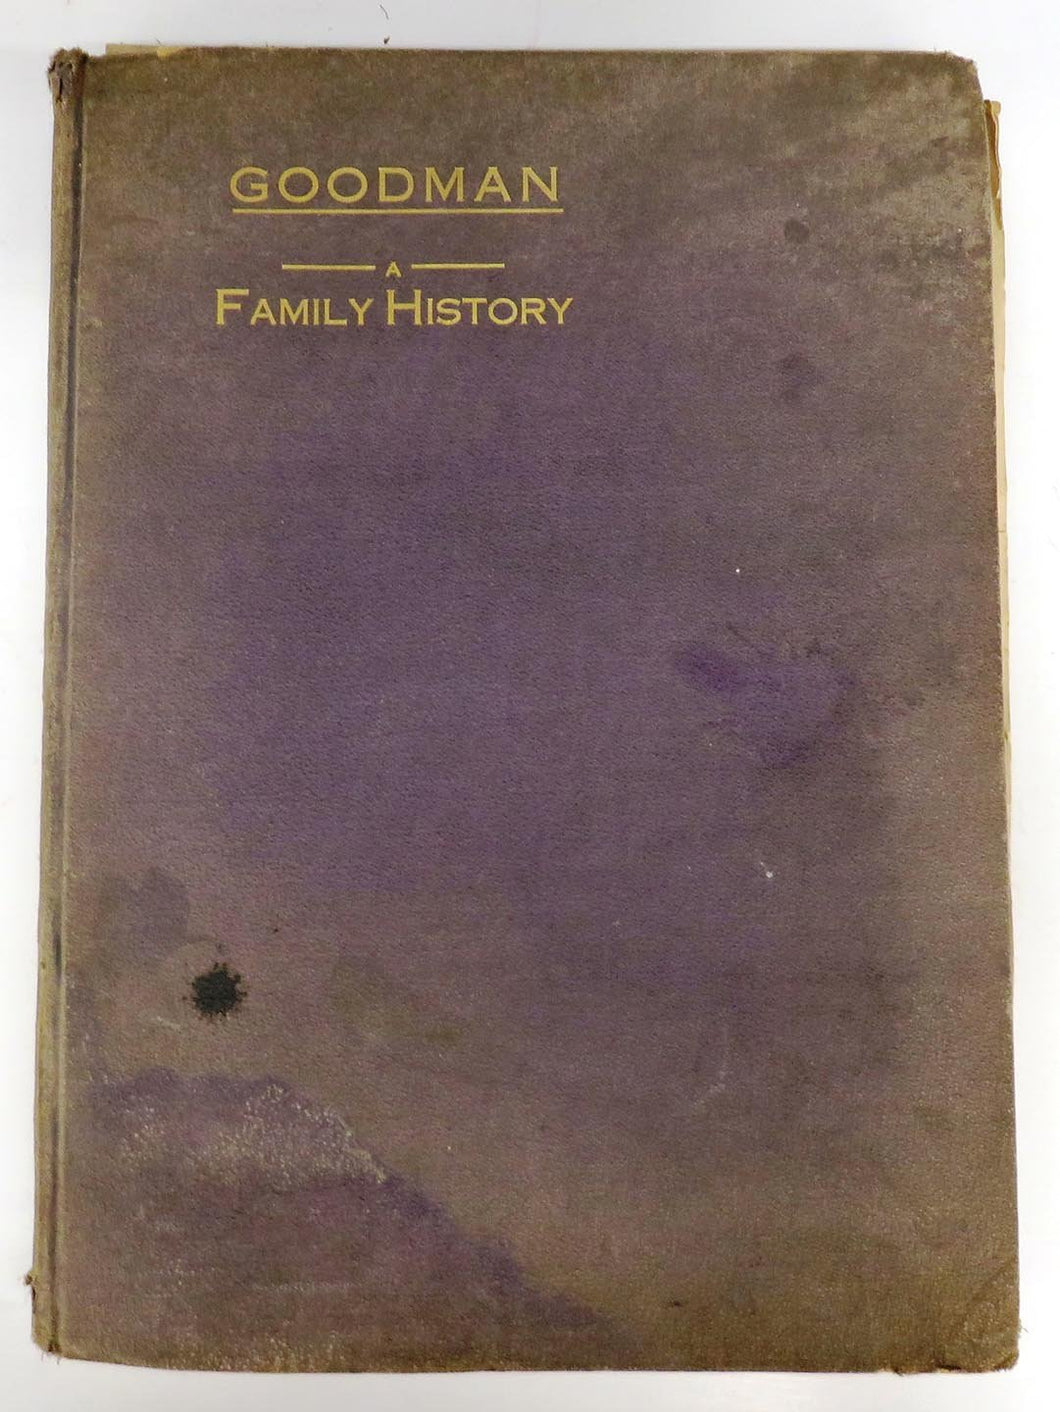 Goodman: A Family History